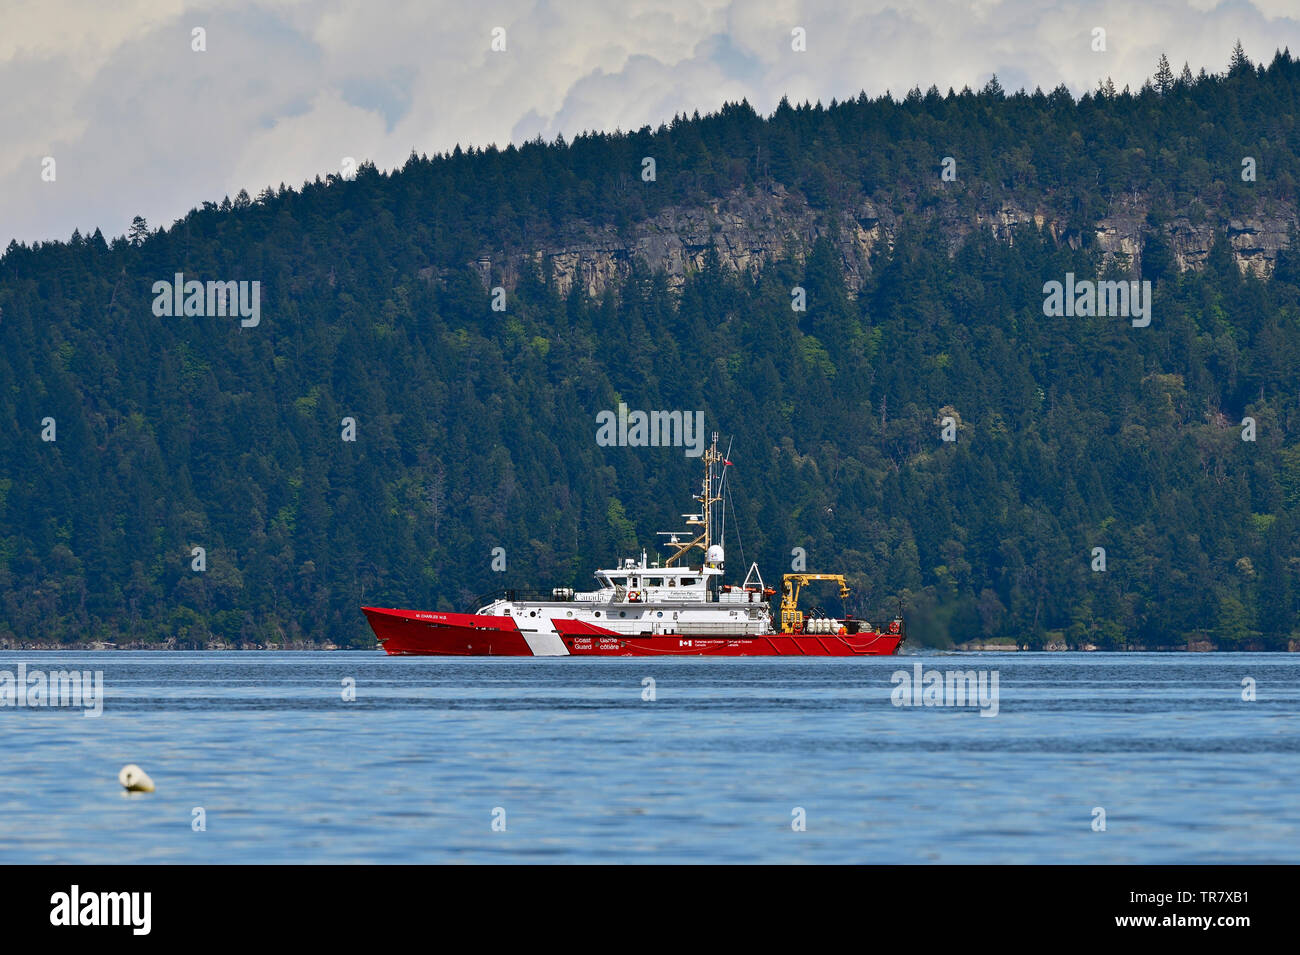 Eine kanadische Küstenwache Fischerei Patrouille Schiff in den Gewässern der Straße von Georgia in der Nähe von Vancouver Island, British Columbia Kanada reisen. Stockfoto